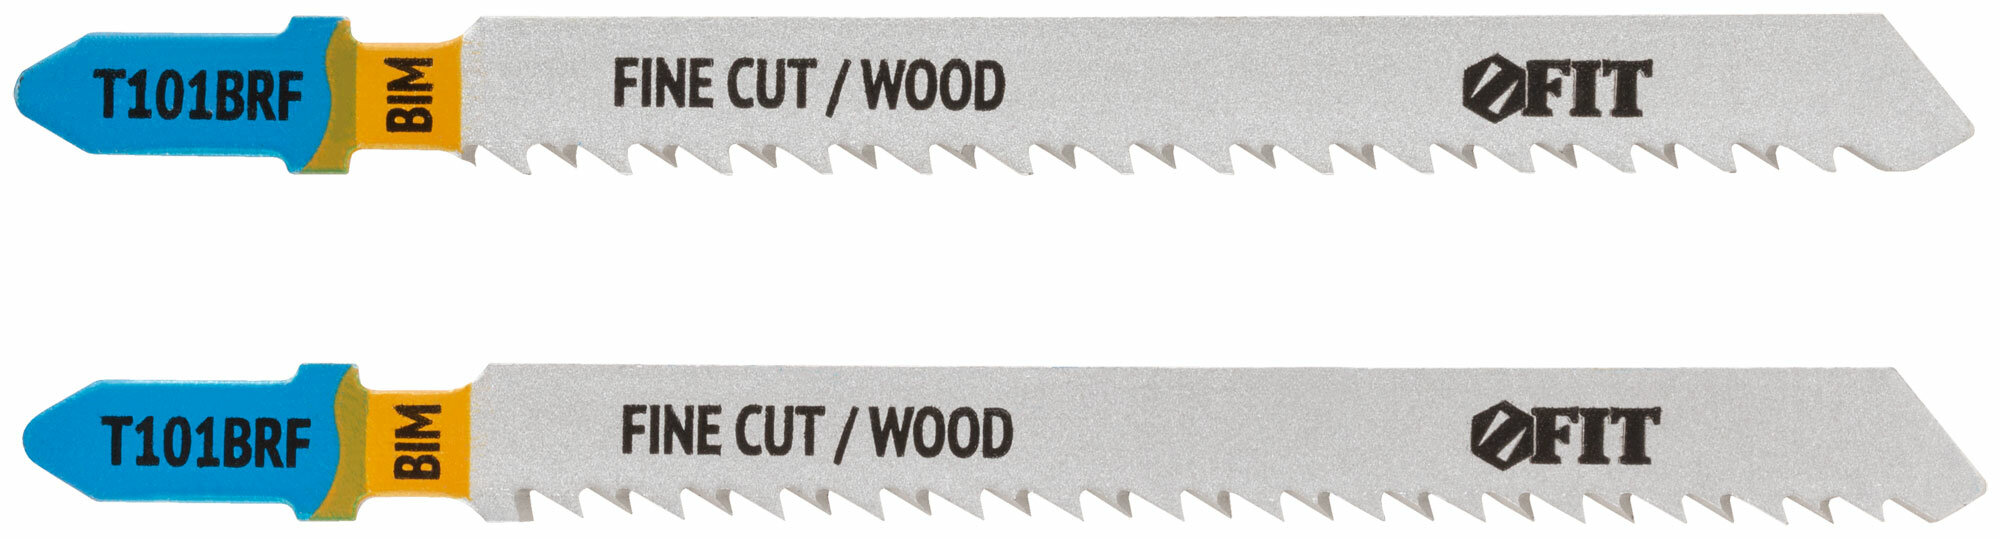 Полотна по дереву Bimetal шлифованные под свободным углом реверс. зубья 100/74/25 мм (T101BRF) 2 шт.